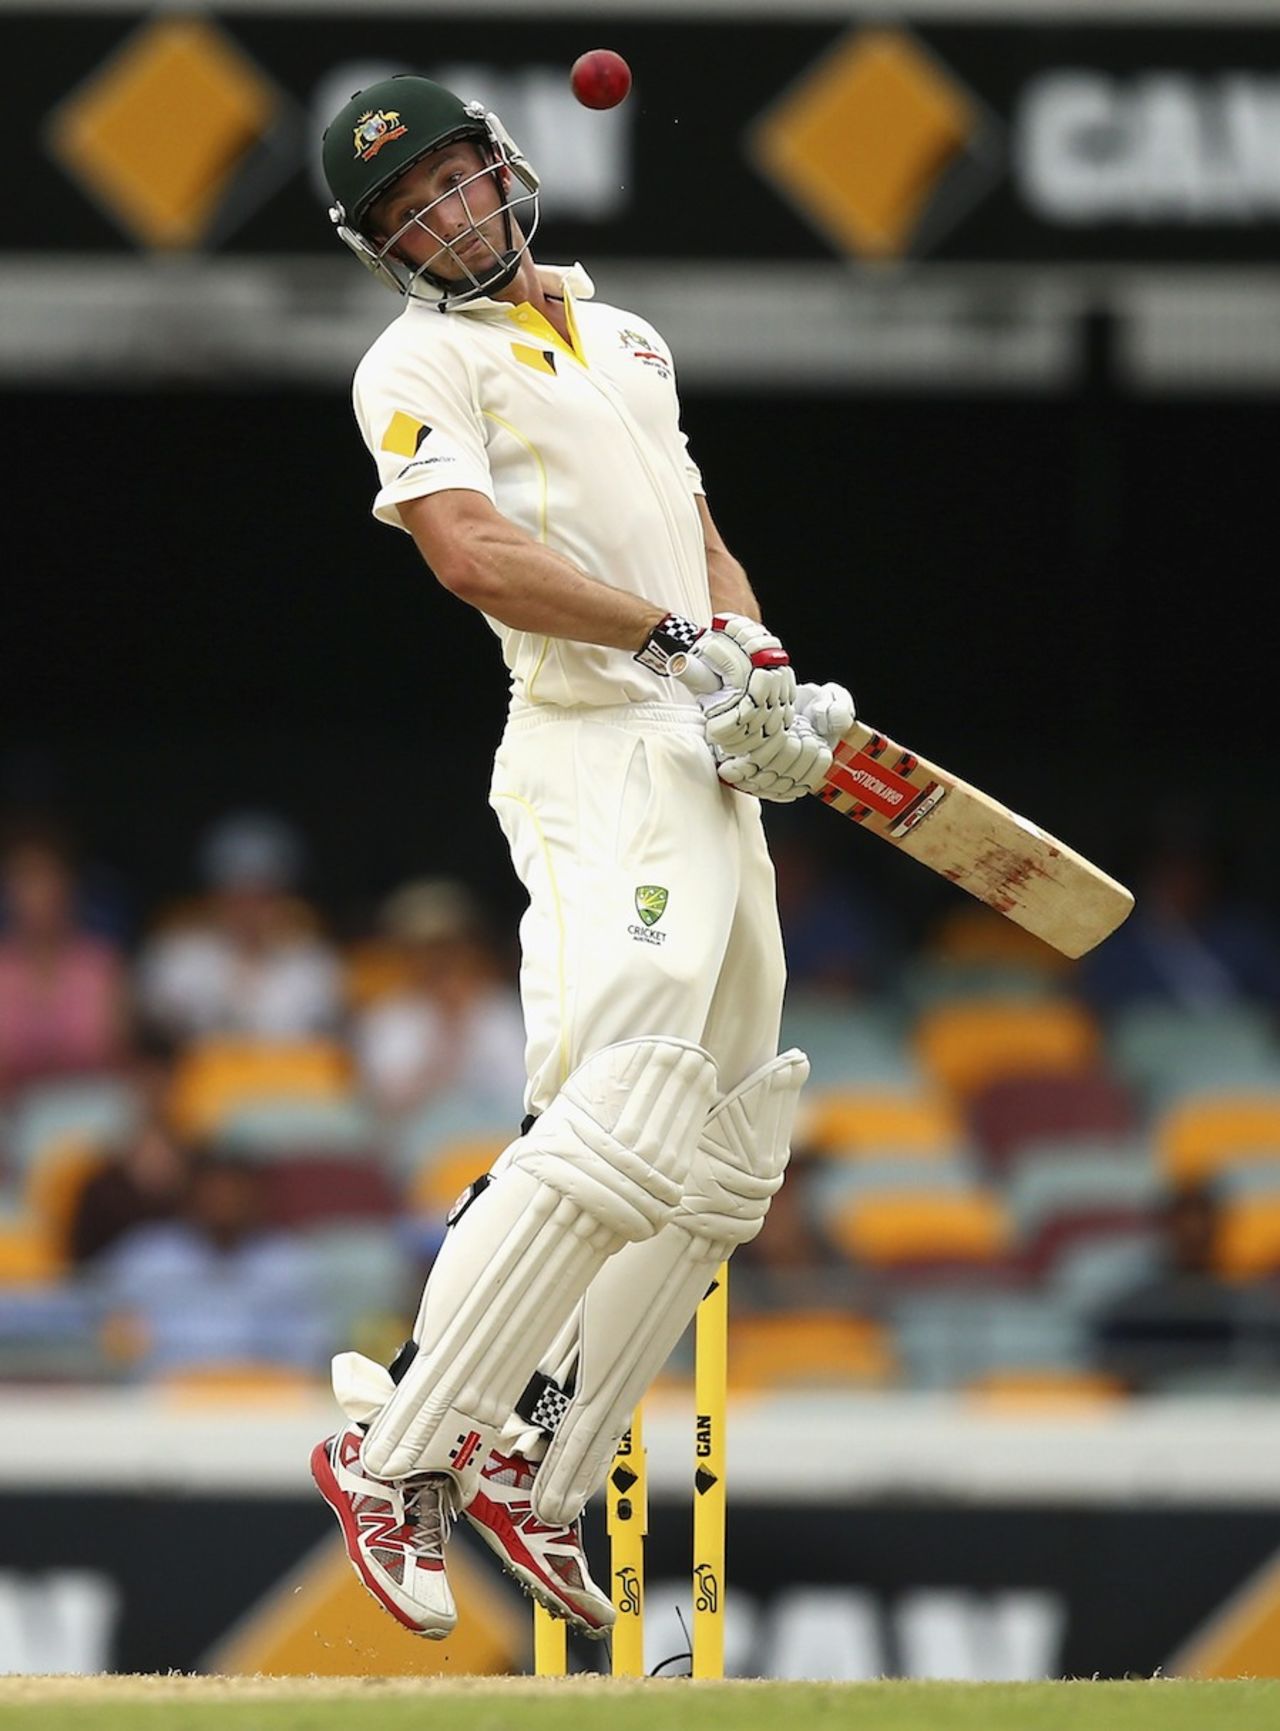 Shaun Marsh avoids a short ball, Australia v India, 2nd Test, Brisbane, 2nd day, December 18, 2014